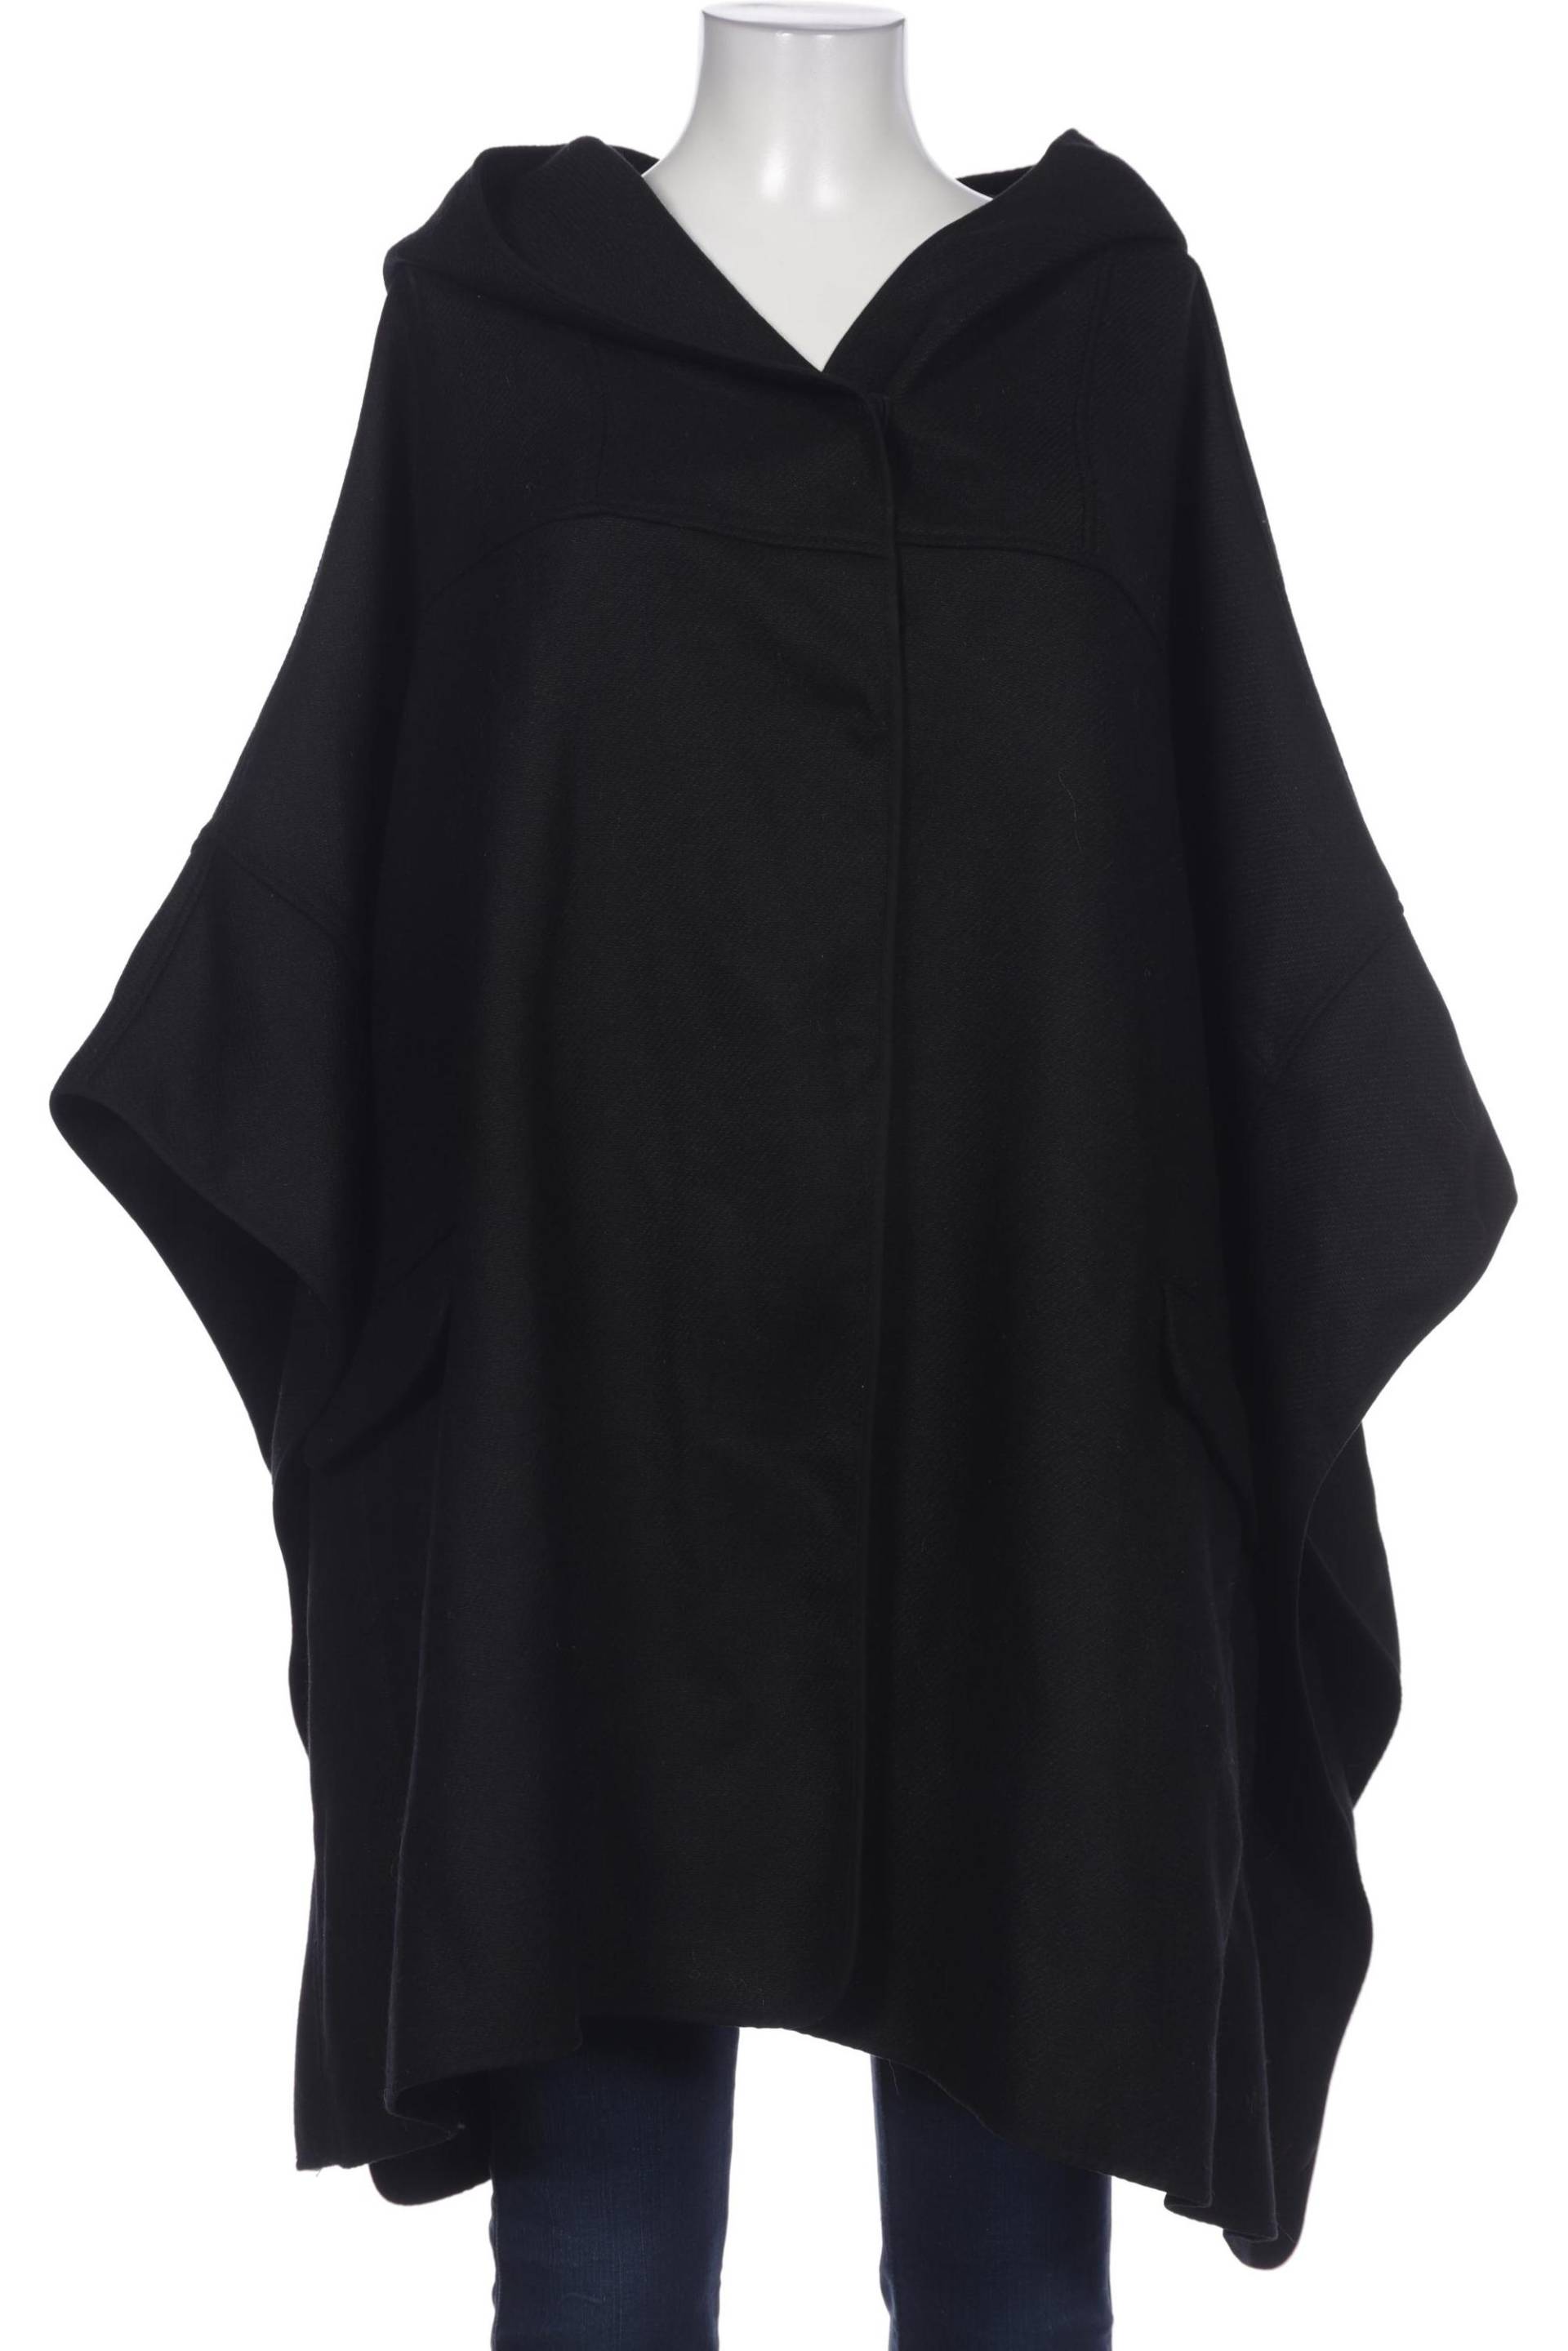 H&M Damen Mantel, schwarz, Gr. 44 von H&M